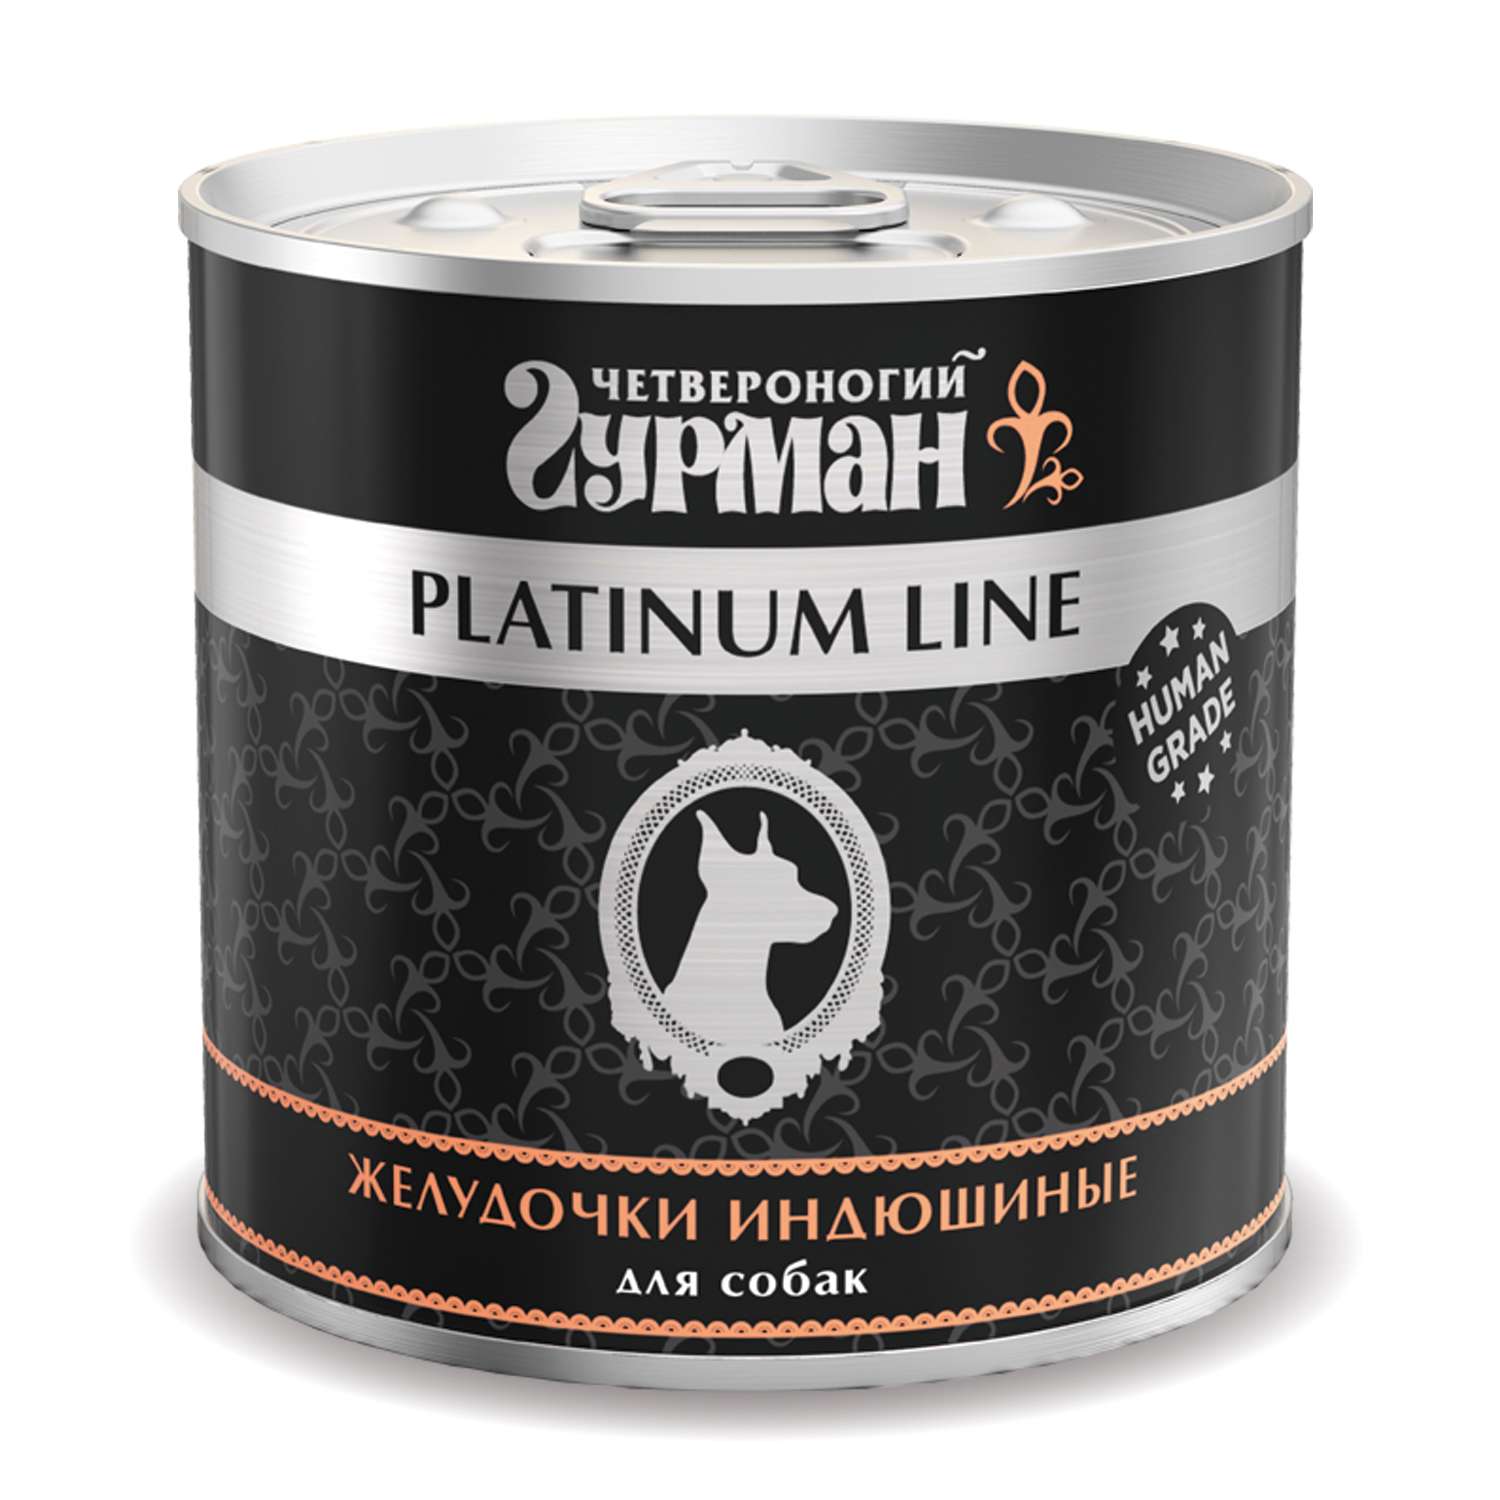 Корм для собак Четвероногий Гурман Platinum желудочки индюшиные в желе 500г - фото 1